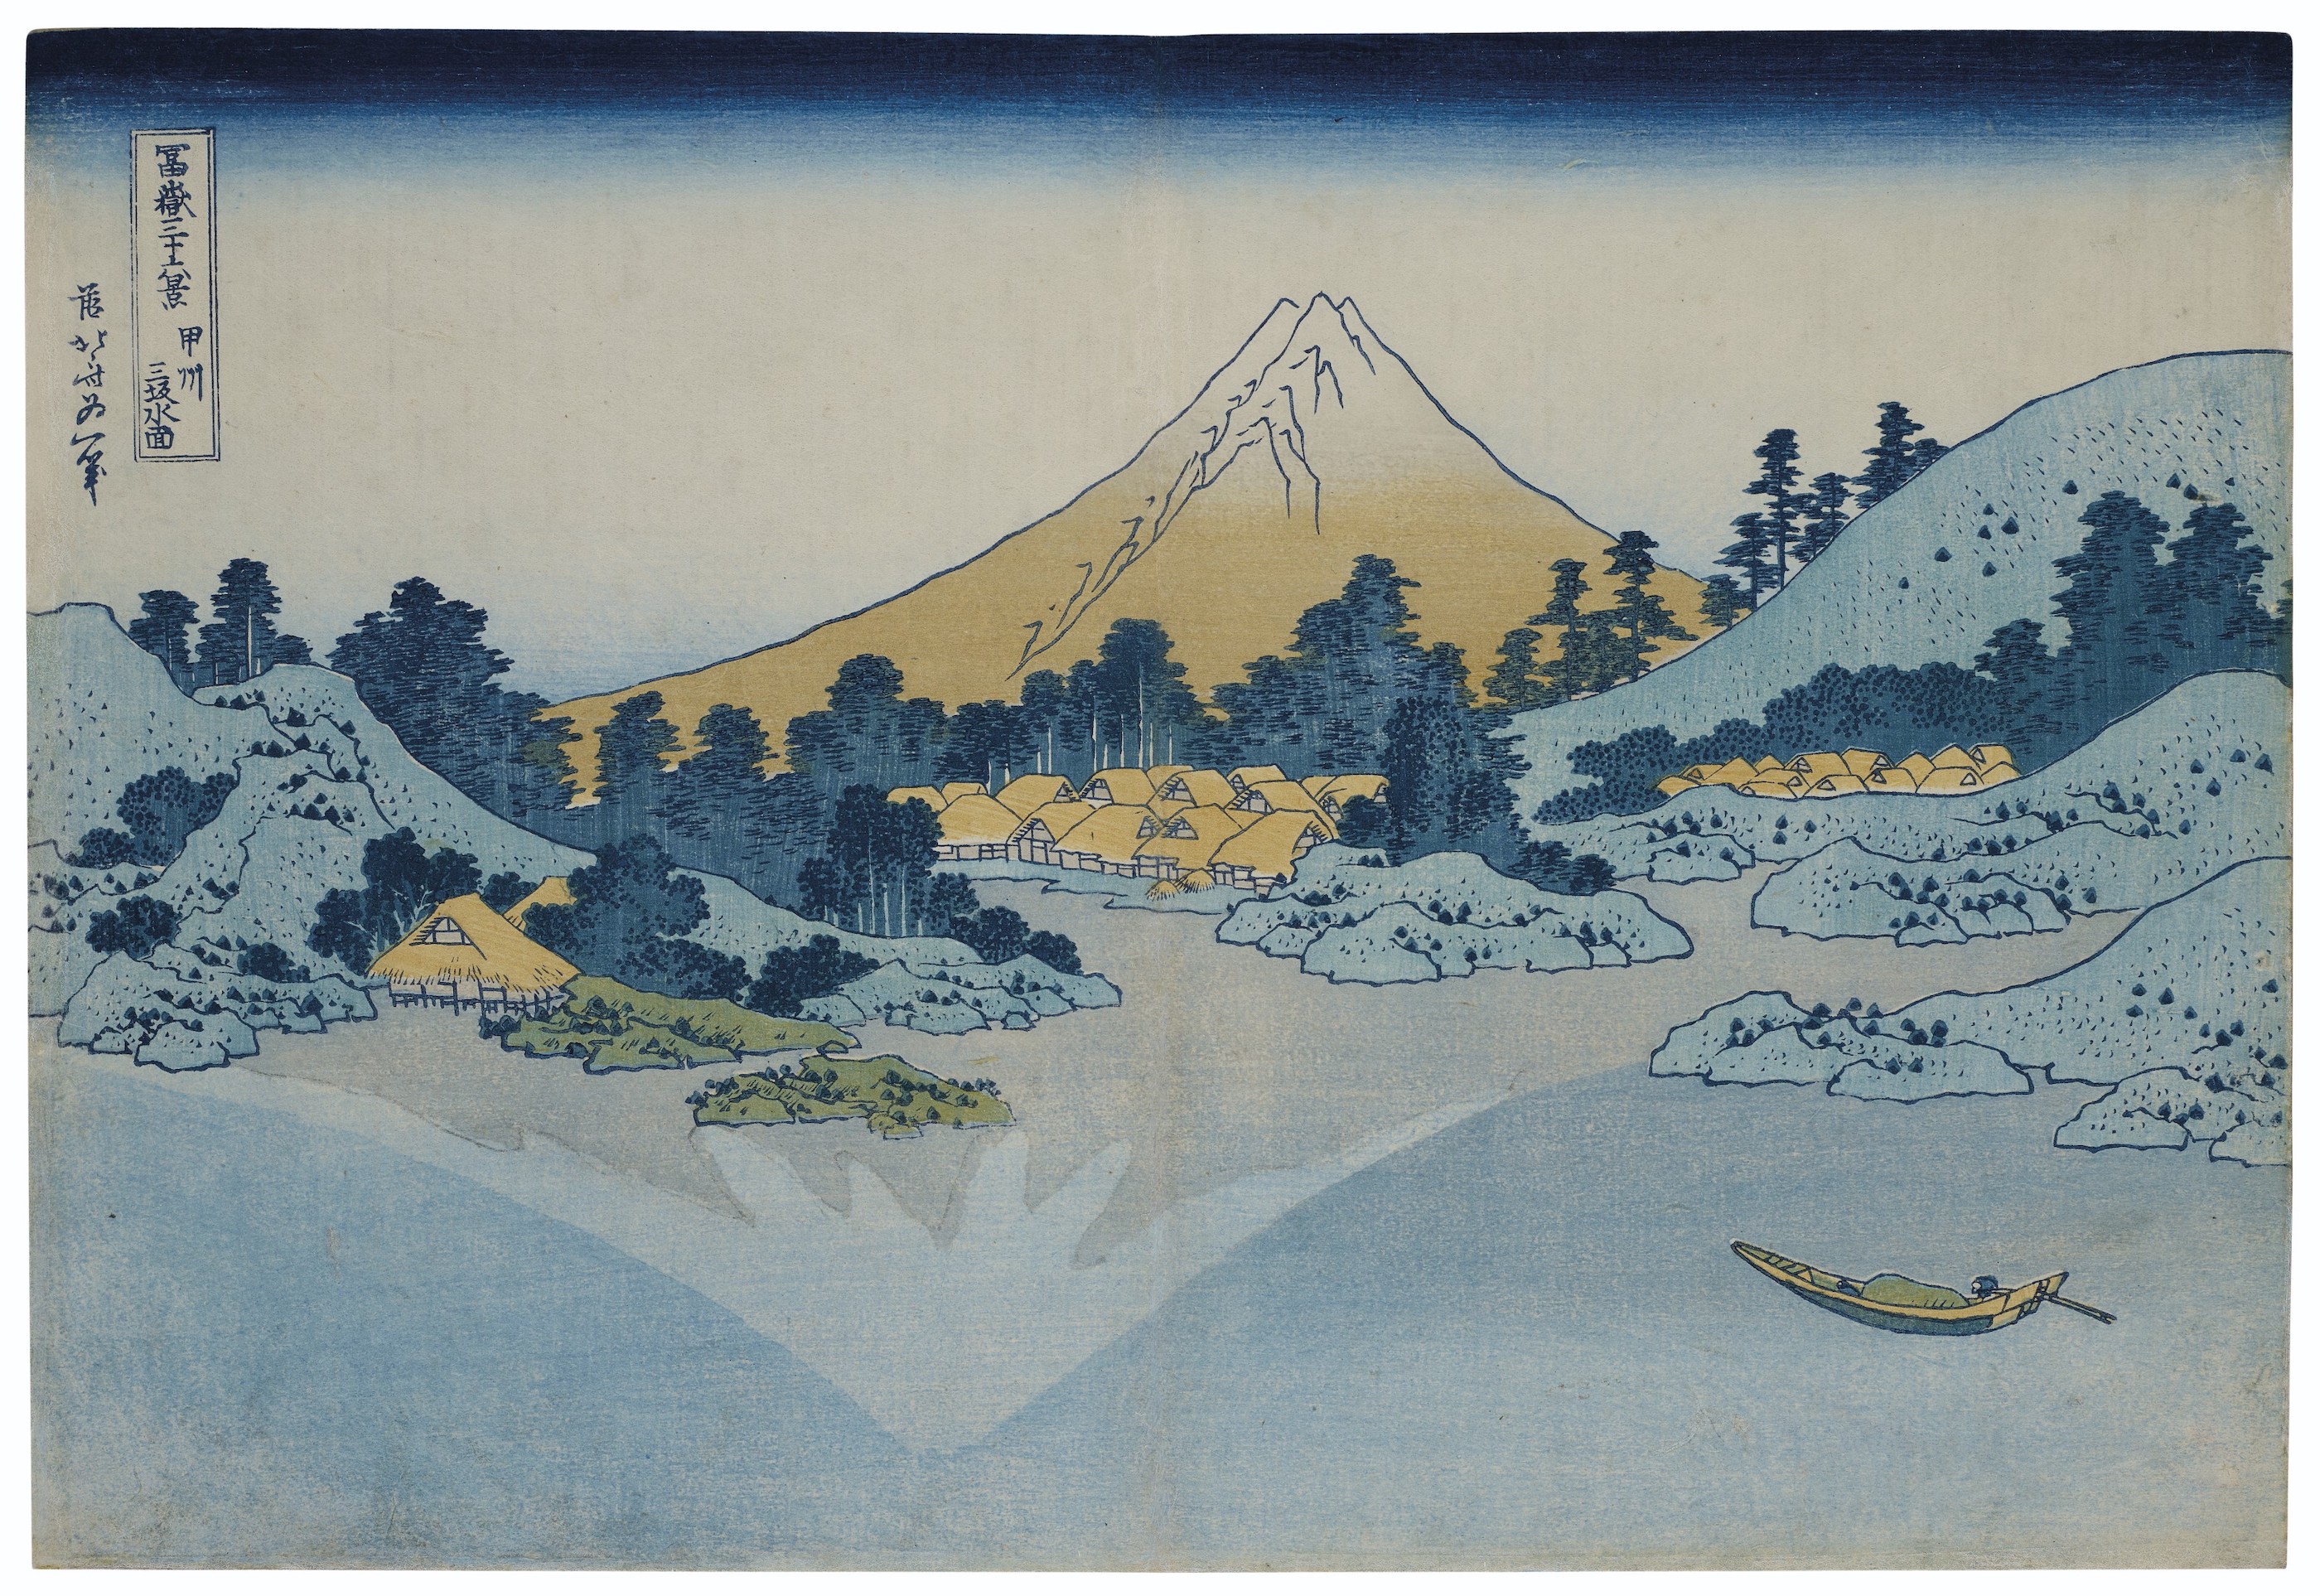 Површина језера Мисака, провинција Каи by Katsushika Hokusai - 1830-32. - 25.4 x 37.5 cm 